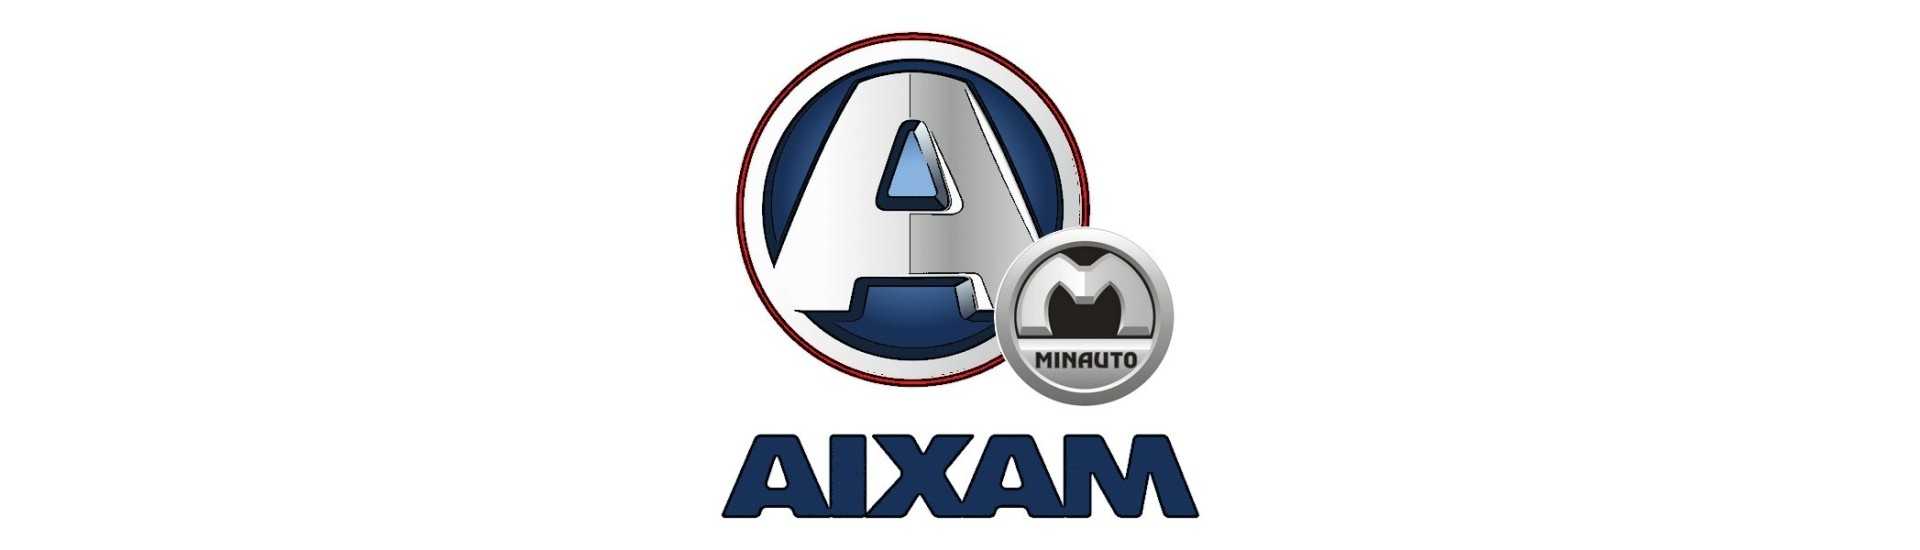 Cappot-Shirt zum besten Preis für Auto ohne Lizenz Aixam Minauto